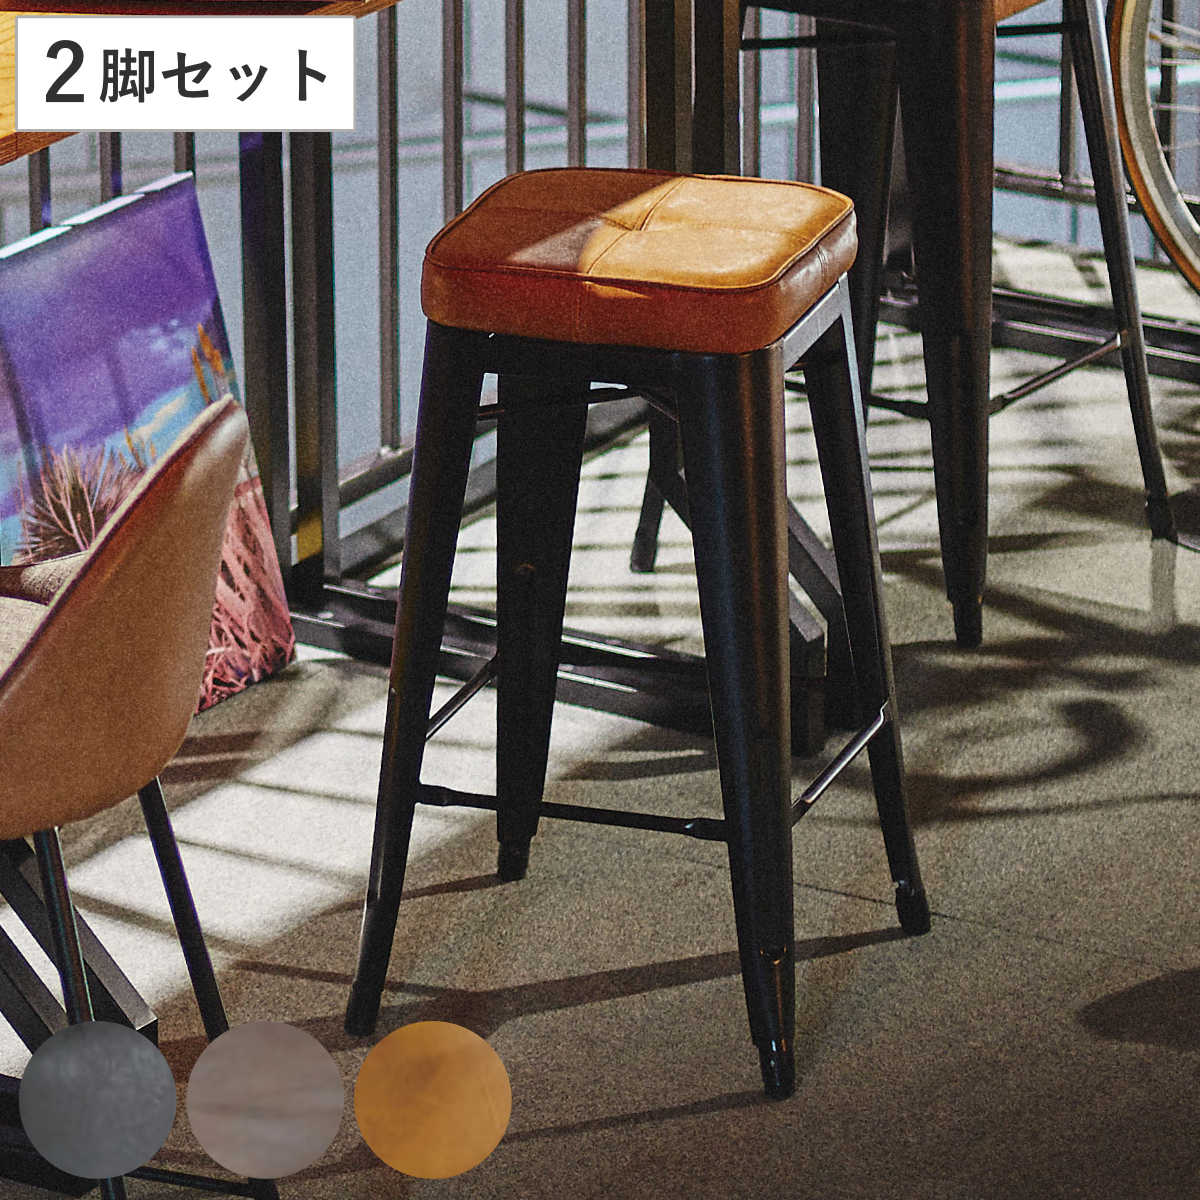 専門店では 【ほぞ組】木製スツール 高さ70cm 丸椅子 stool スツール 